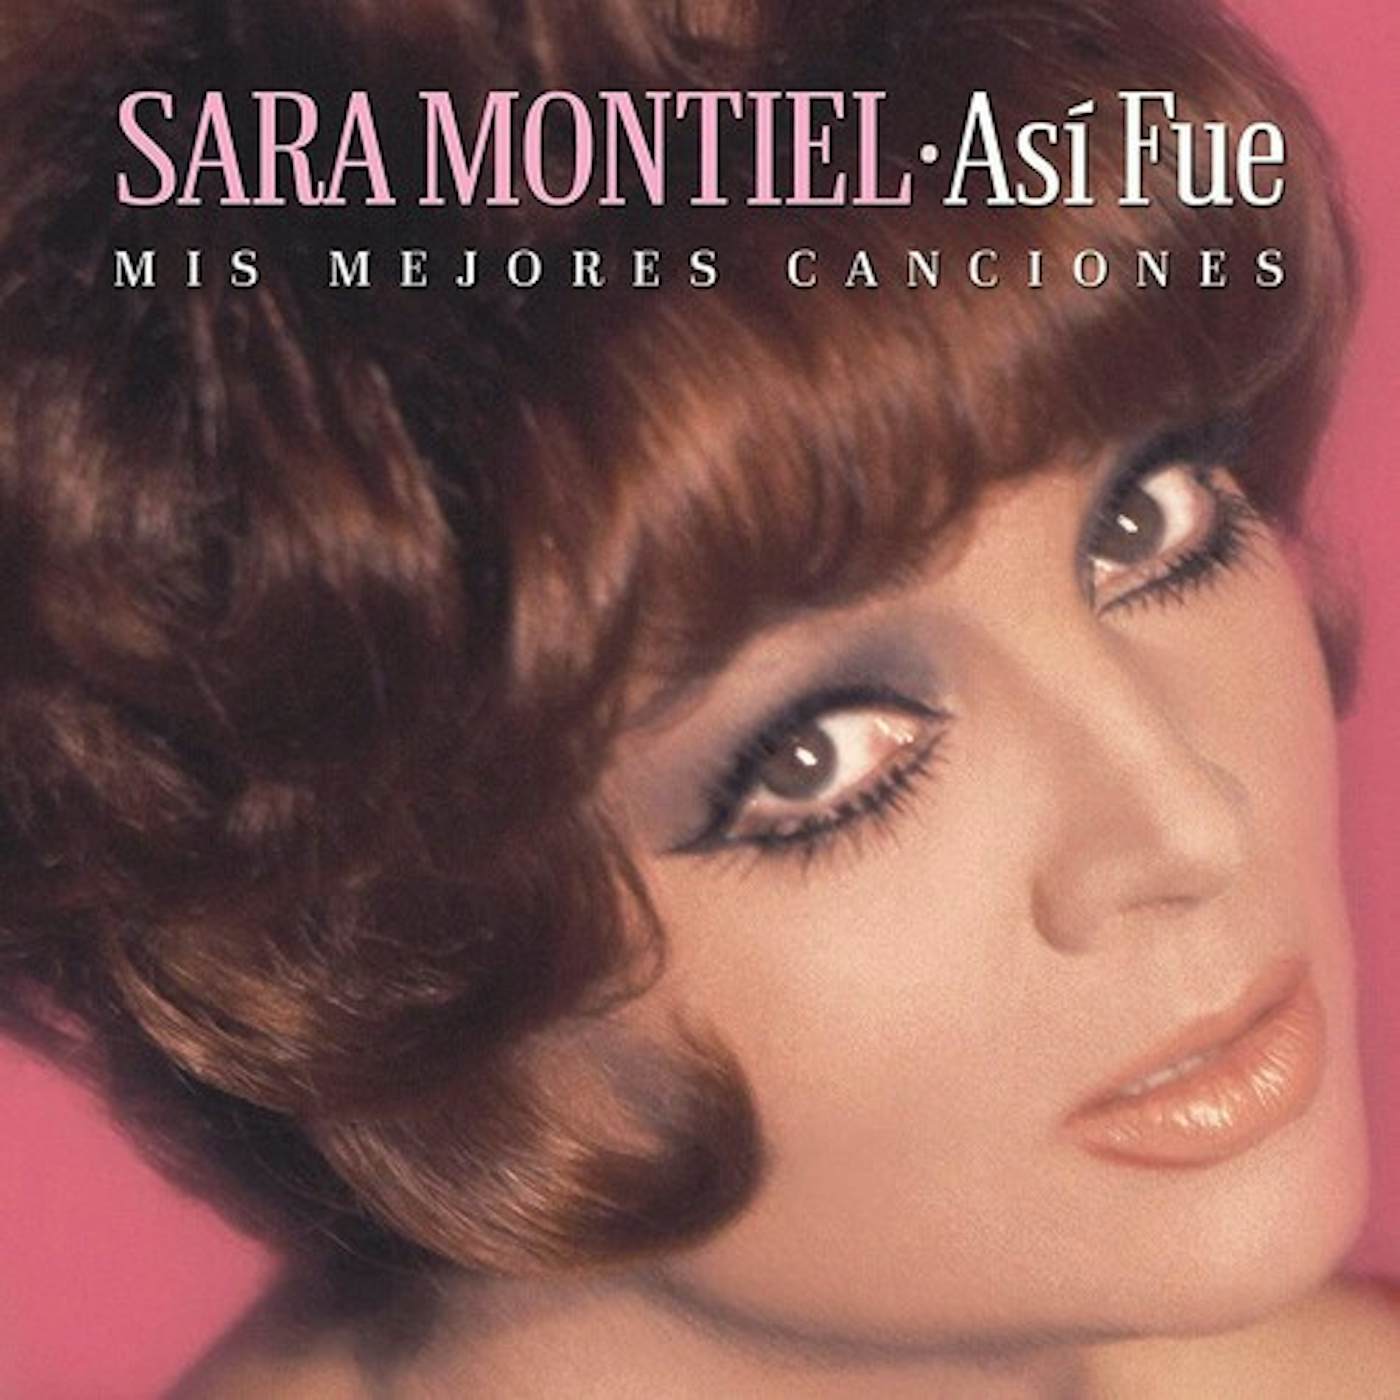 Sara Montiel ASI FUE: MIS MEJORES CANCIONES CD